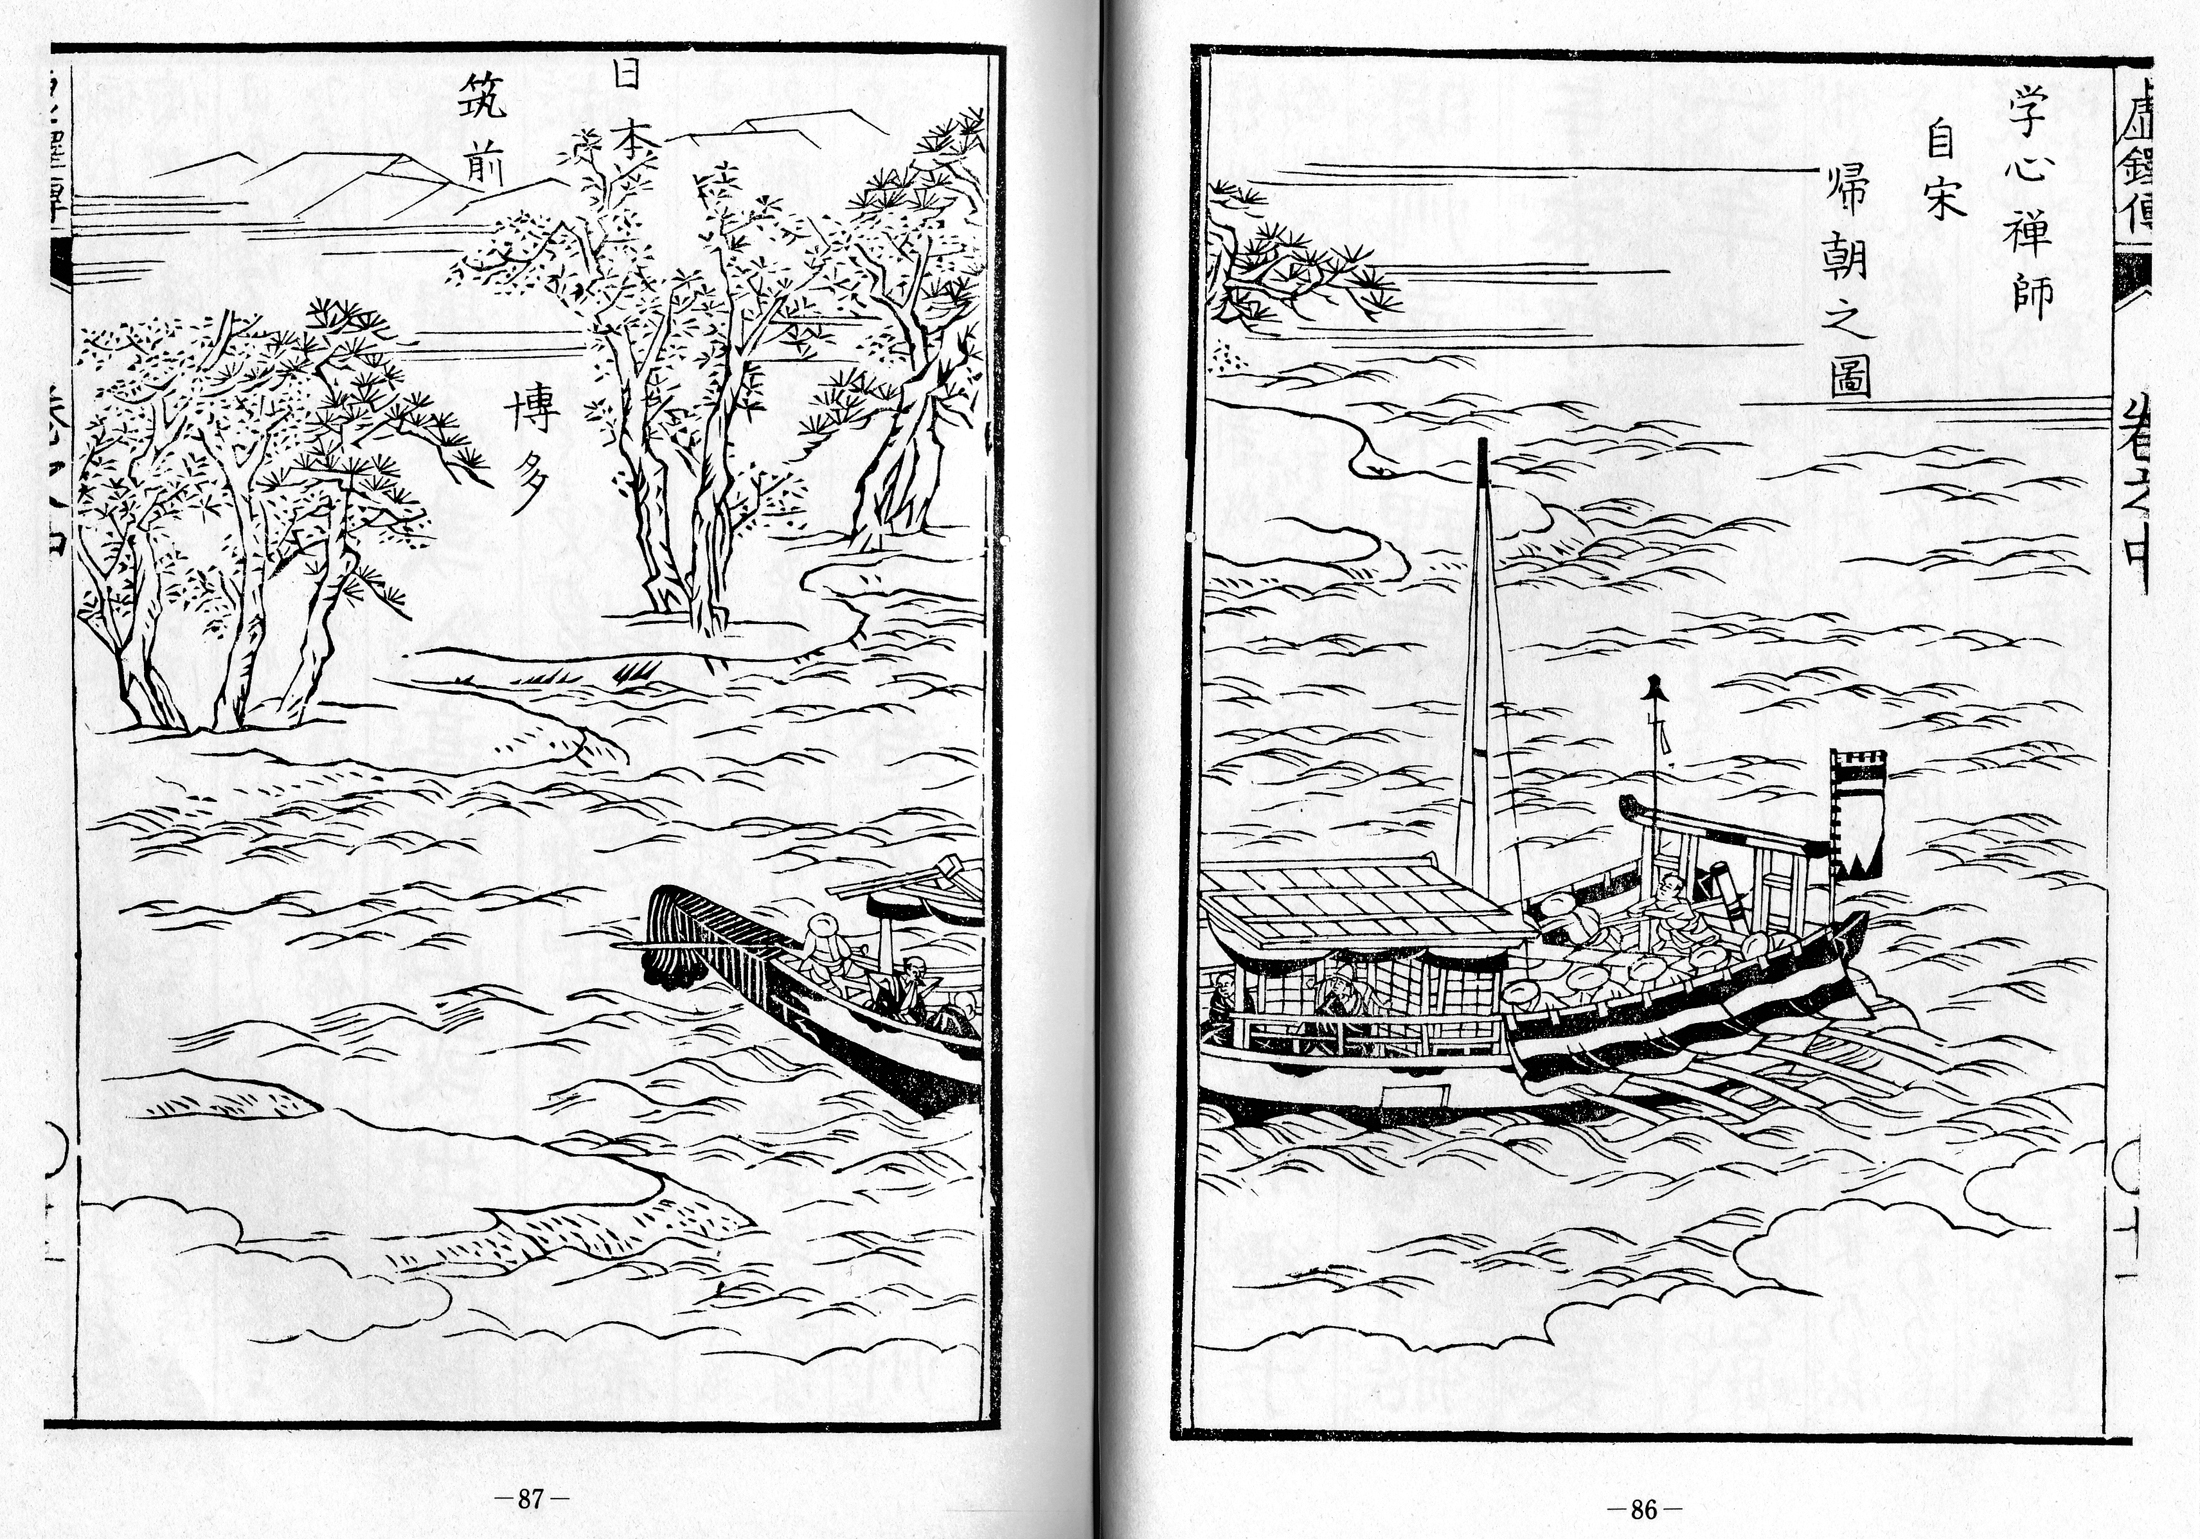 Kyotaku denki kokujikai illustration pp. 86-87